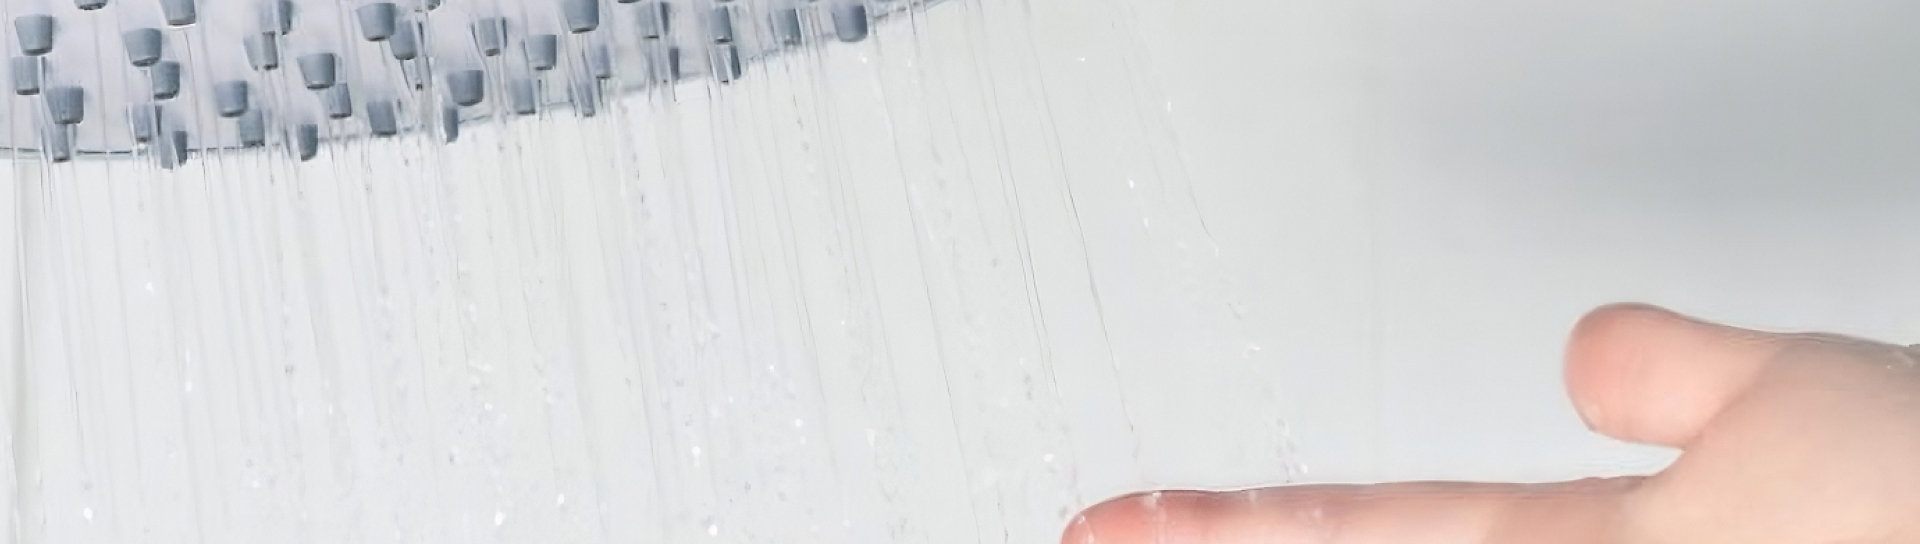 A hand under a shower head